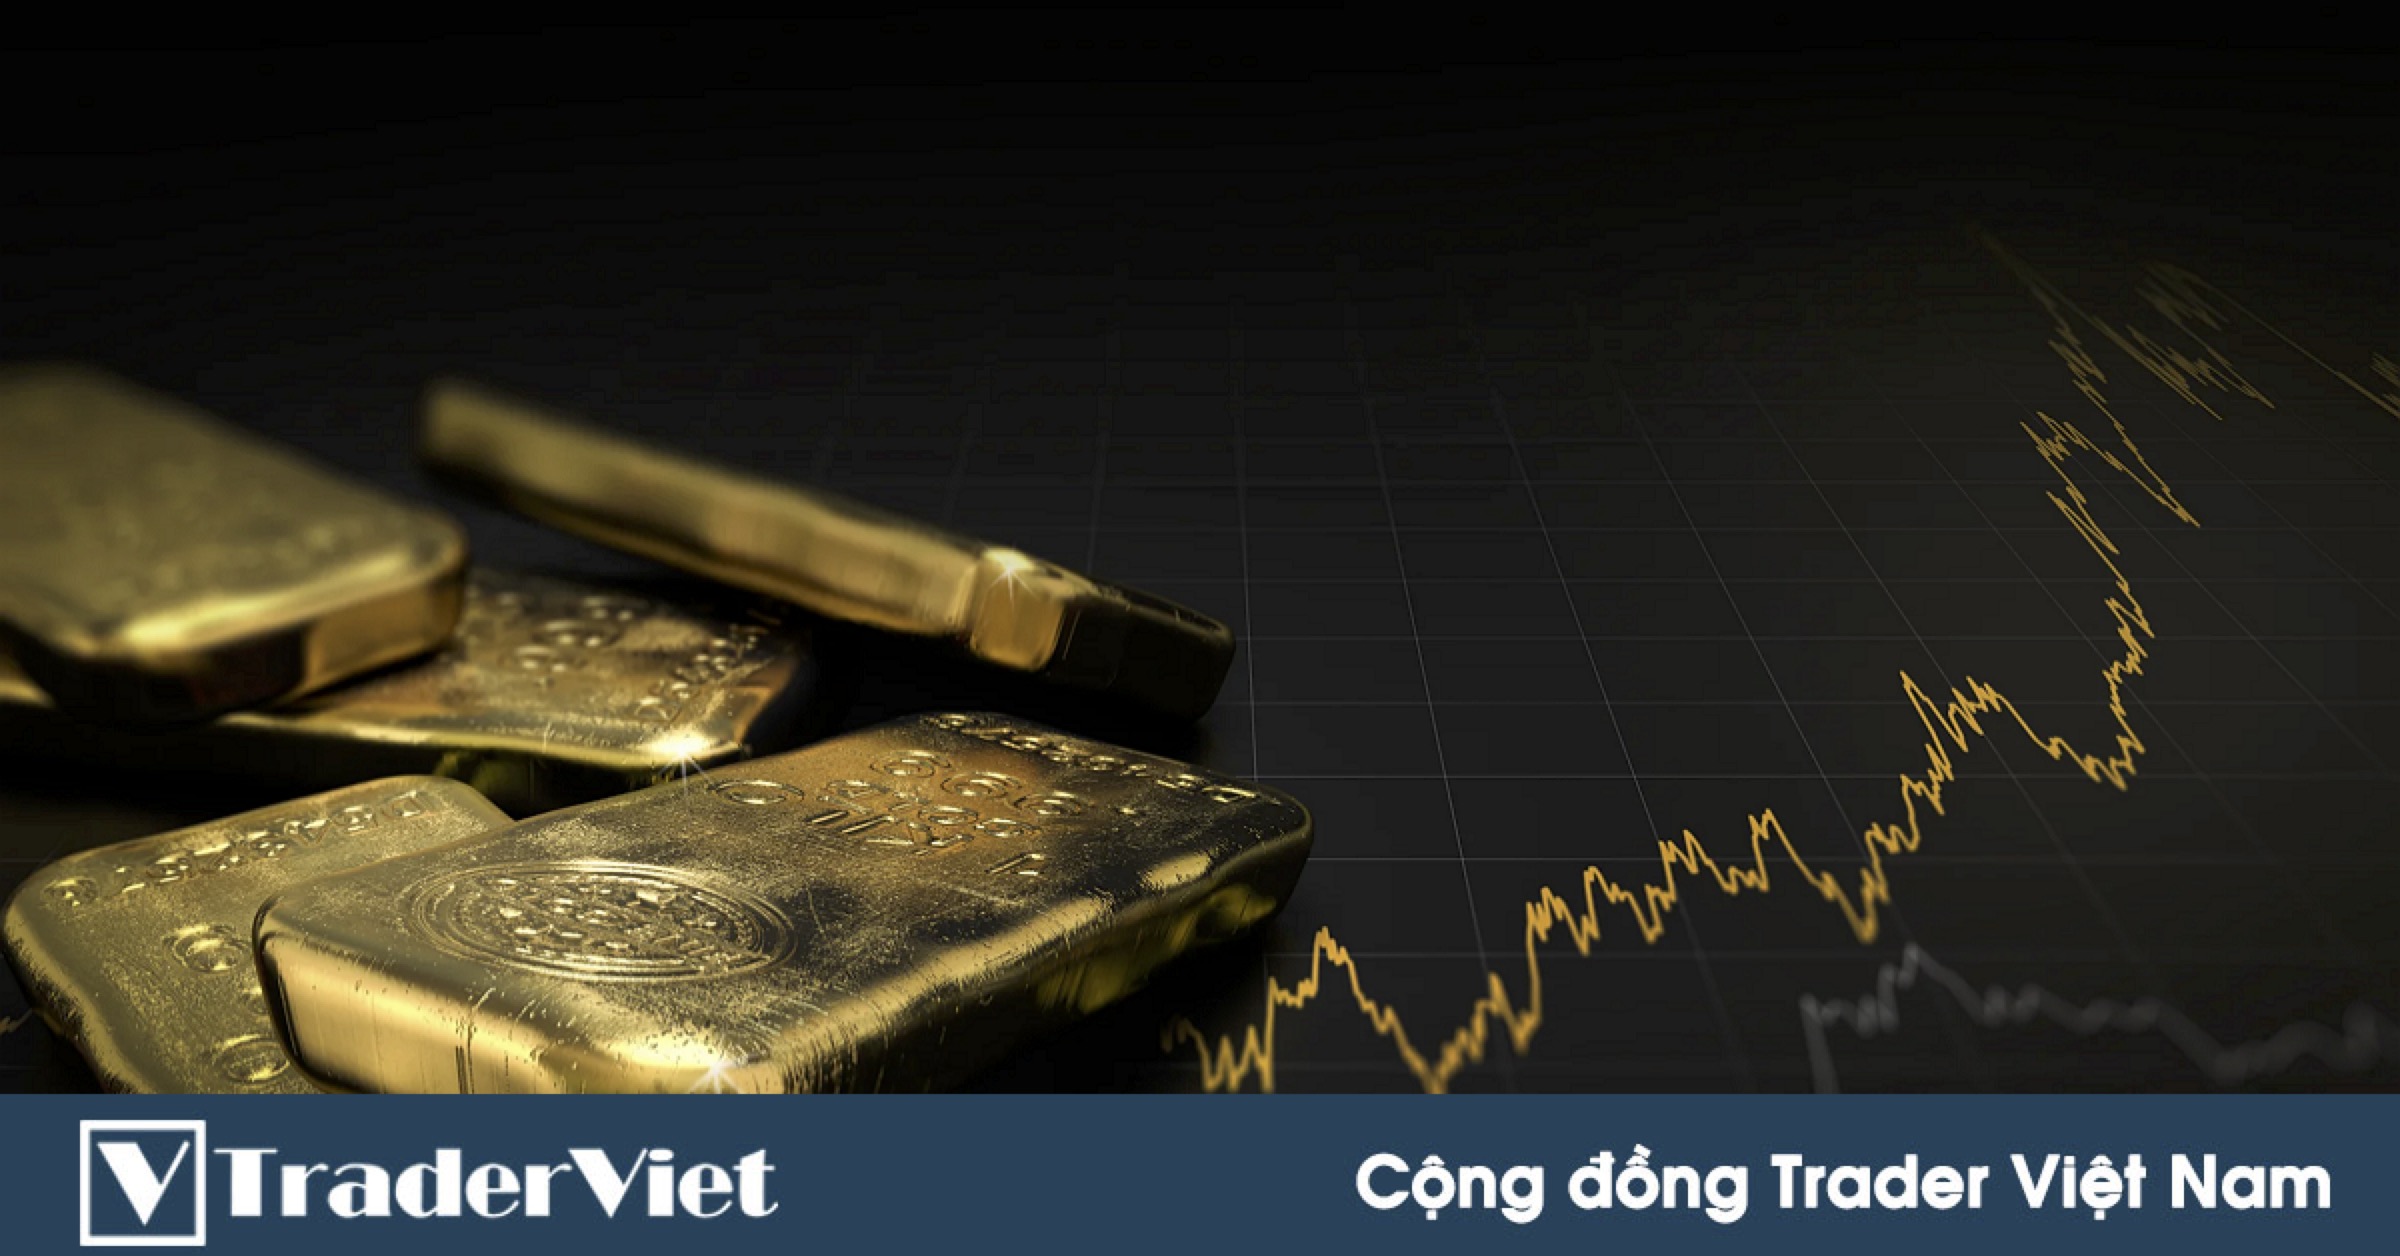 Các quỹ phòng hộ tiếp tục cược tăng cho vàng nhưng mức độ đang giảm xuống